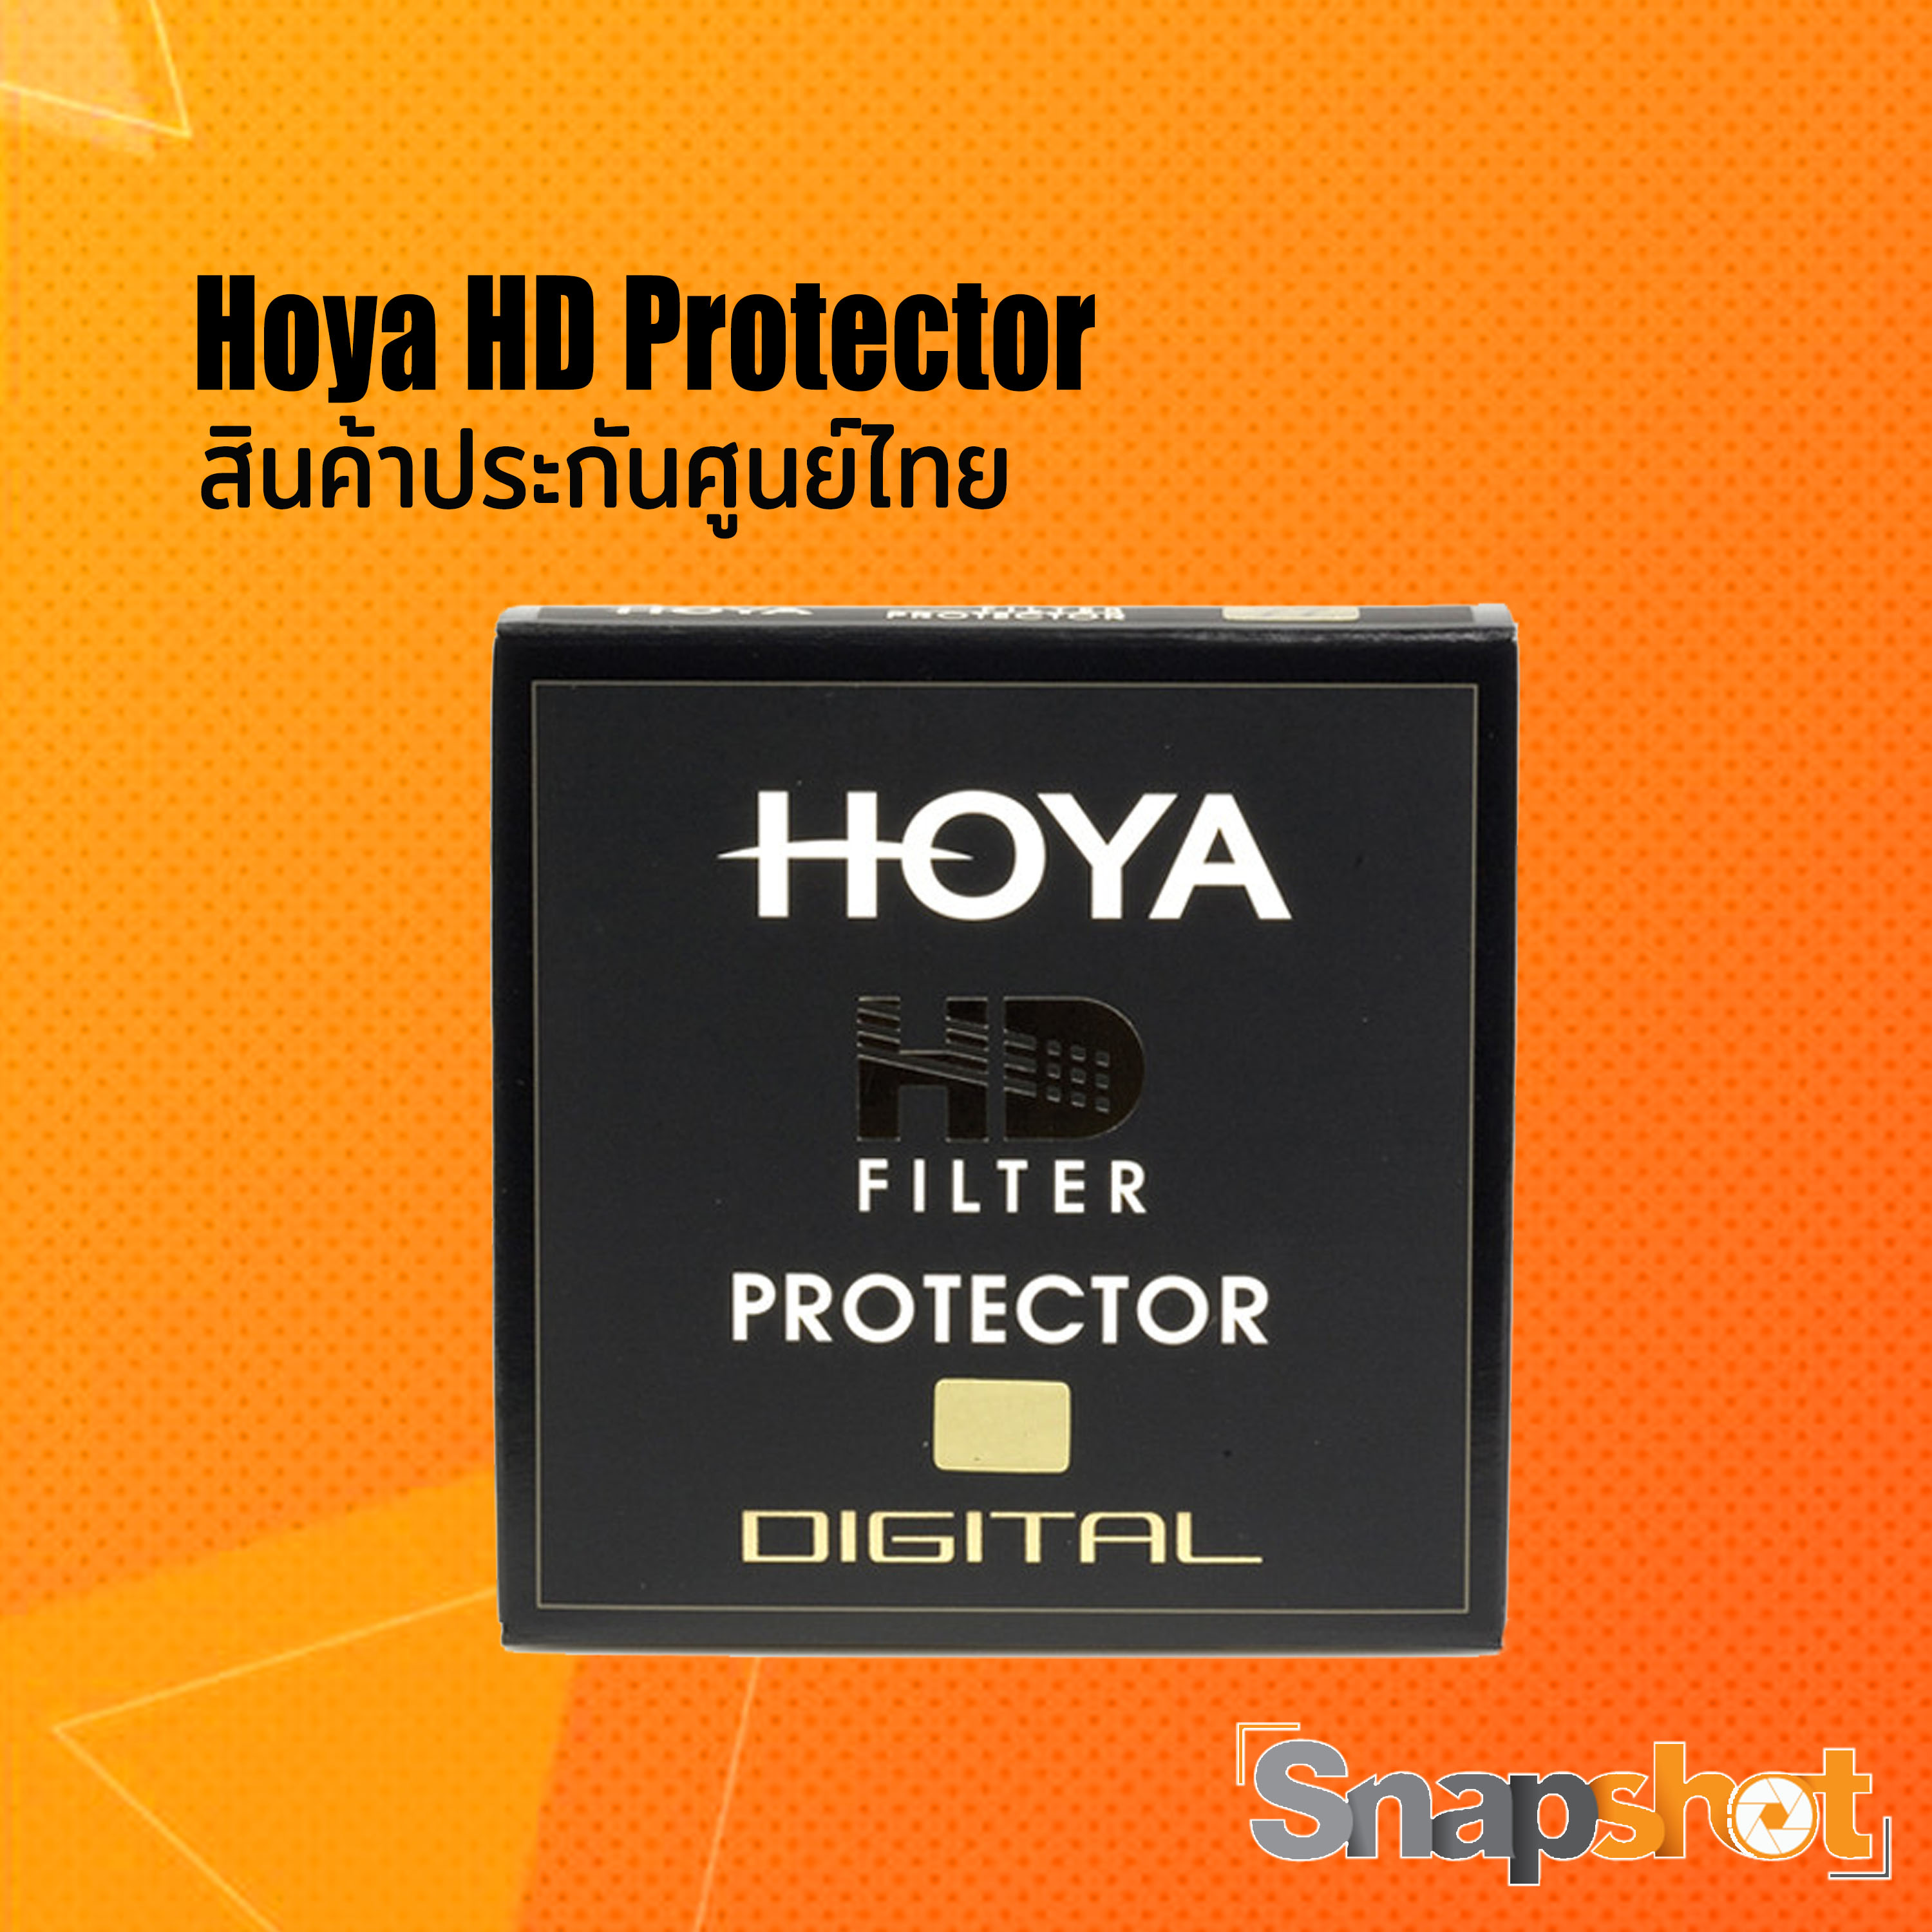 Hoya HD Protector ของแท้ (ประกันศูนย์ไทย)